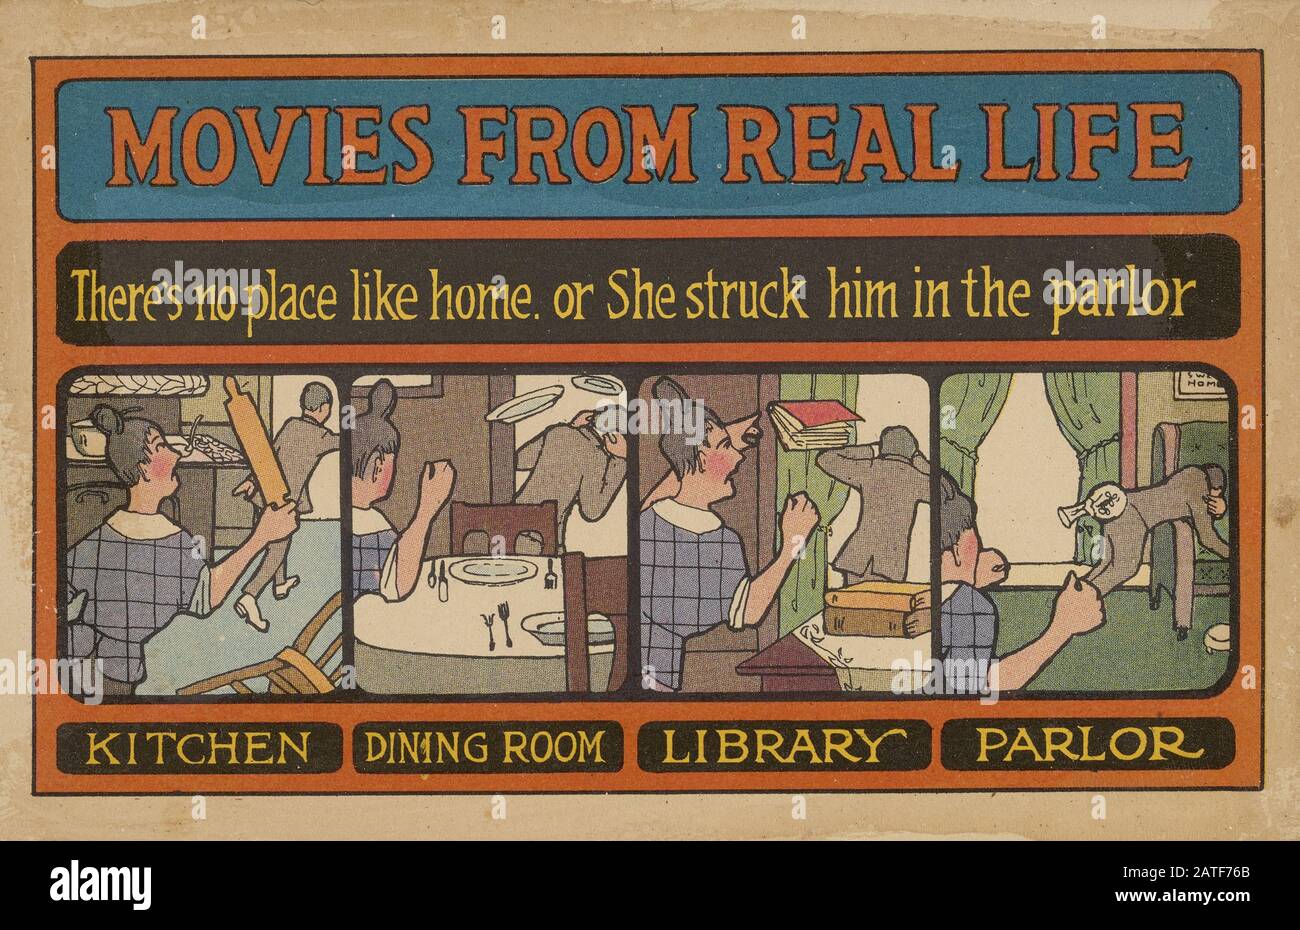 Cine de la vida Real - sufragio femenino en los Estados Unidos 1840' 1920' - propaganda antisufragánea Foto de stock